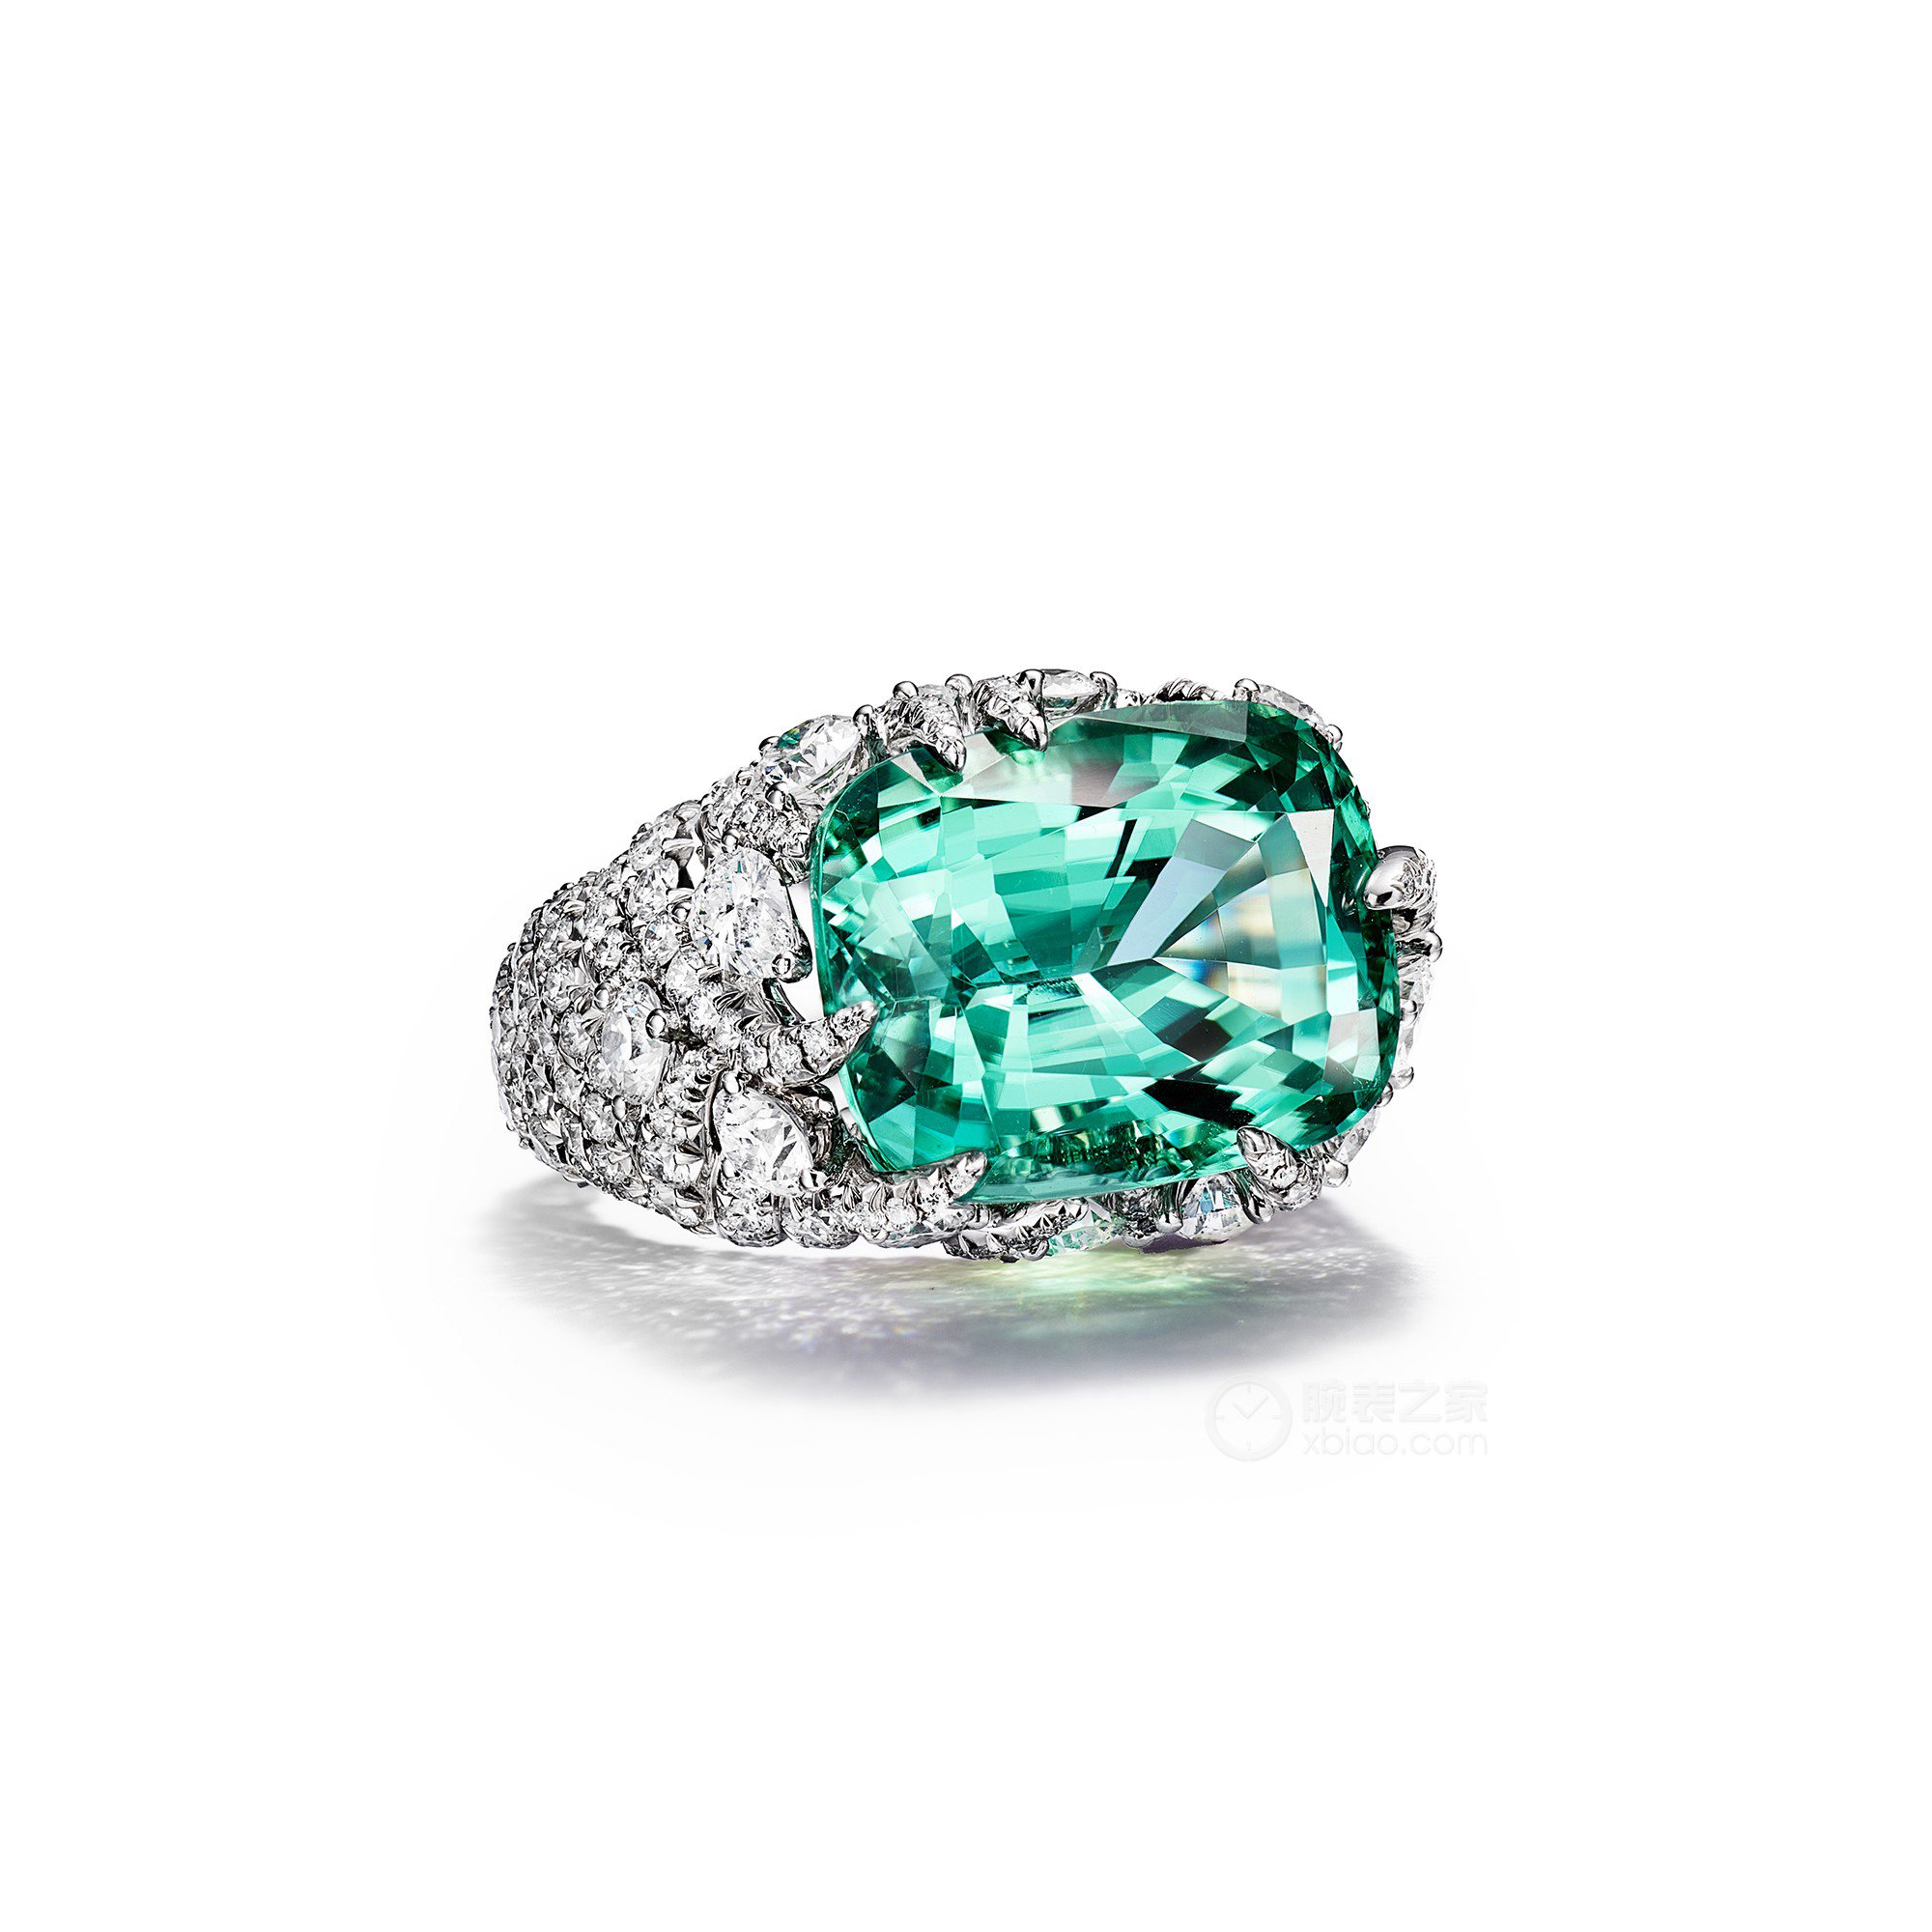 蒂芙尼BLUE BOOK高级珠宝铂金镶嵌一颗重逾17克拉的未经优化处理绿色铜锂碧玺及钻石戒指戒指